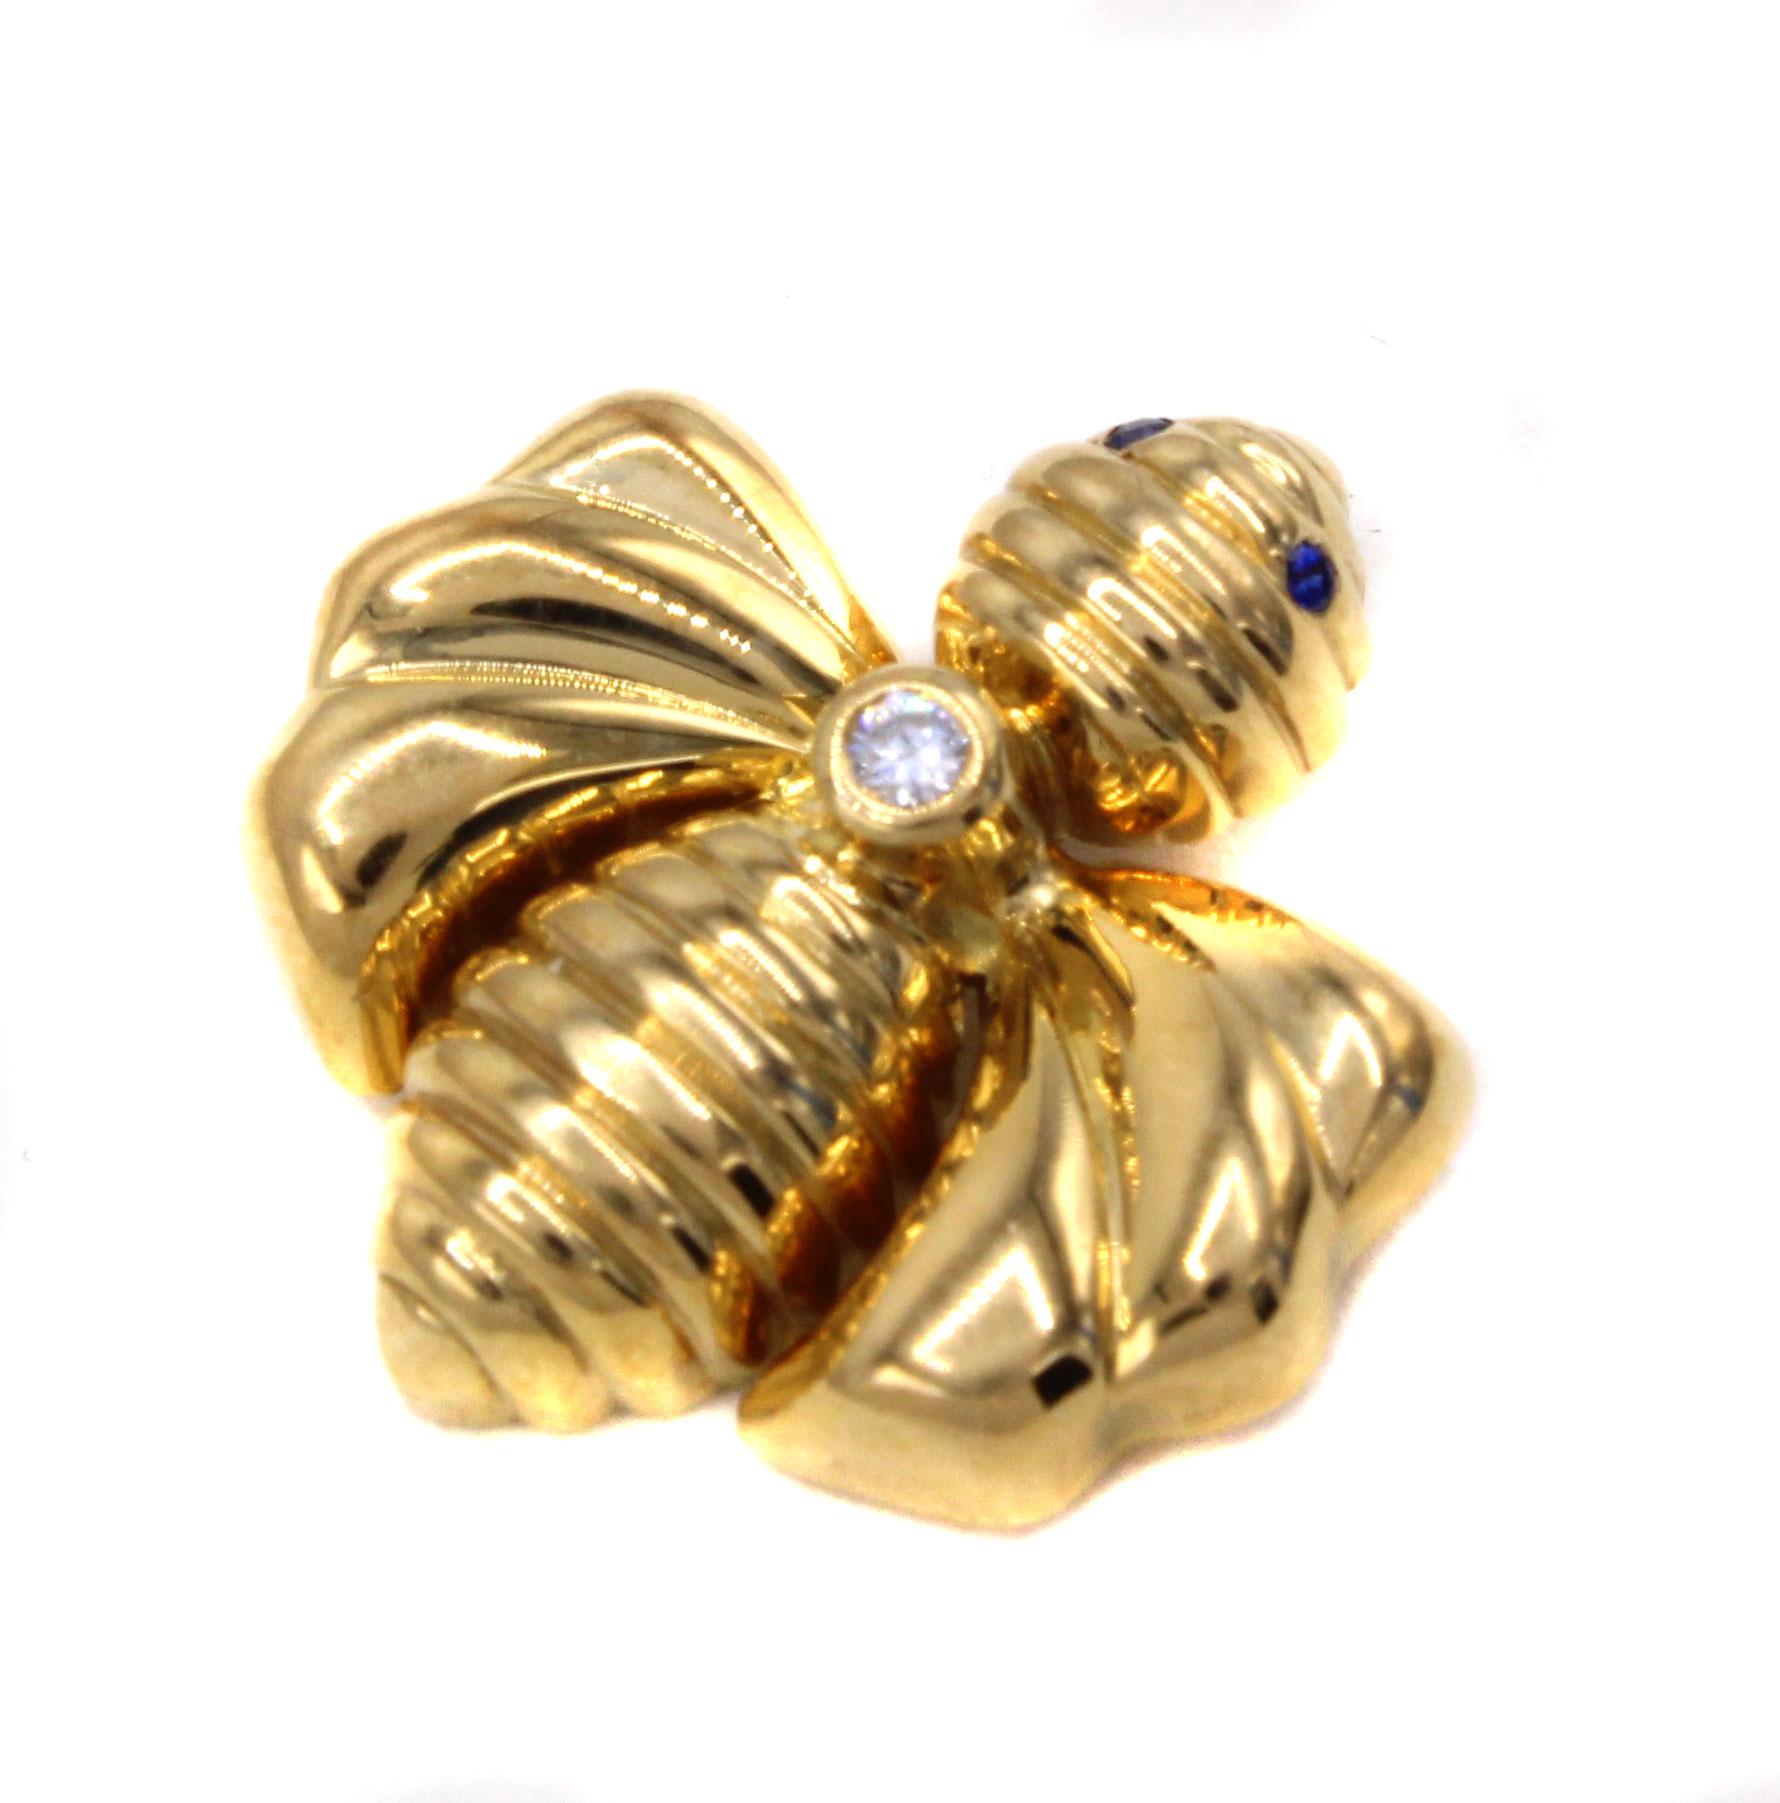 Magnifiquement conçus et fabriqués de main de maître par le célèbre joaillier français Chaumet, ces pendentifs en or 18 carats représentant un bourdon constituent un pendentif charmant et des plus faciles à porter. Un diamant blanc brillant est